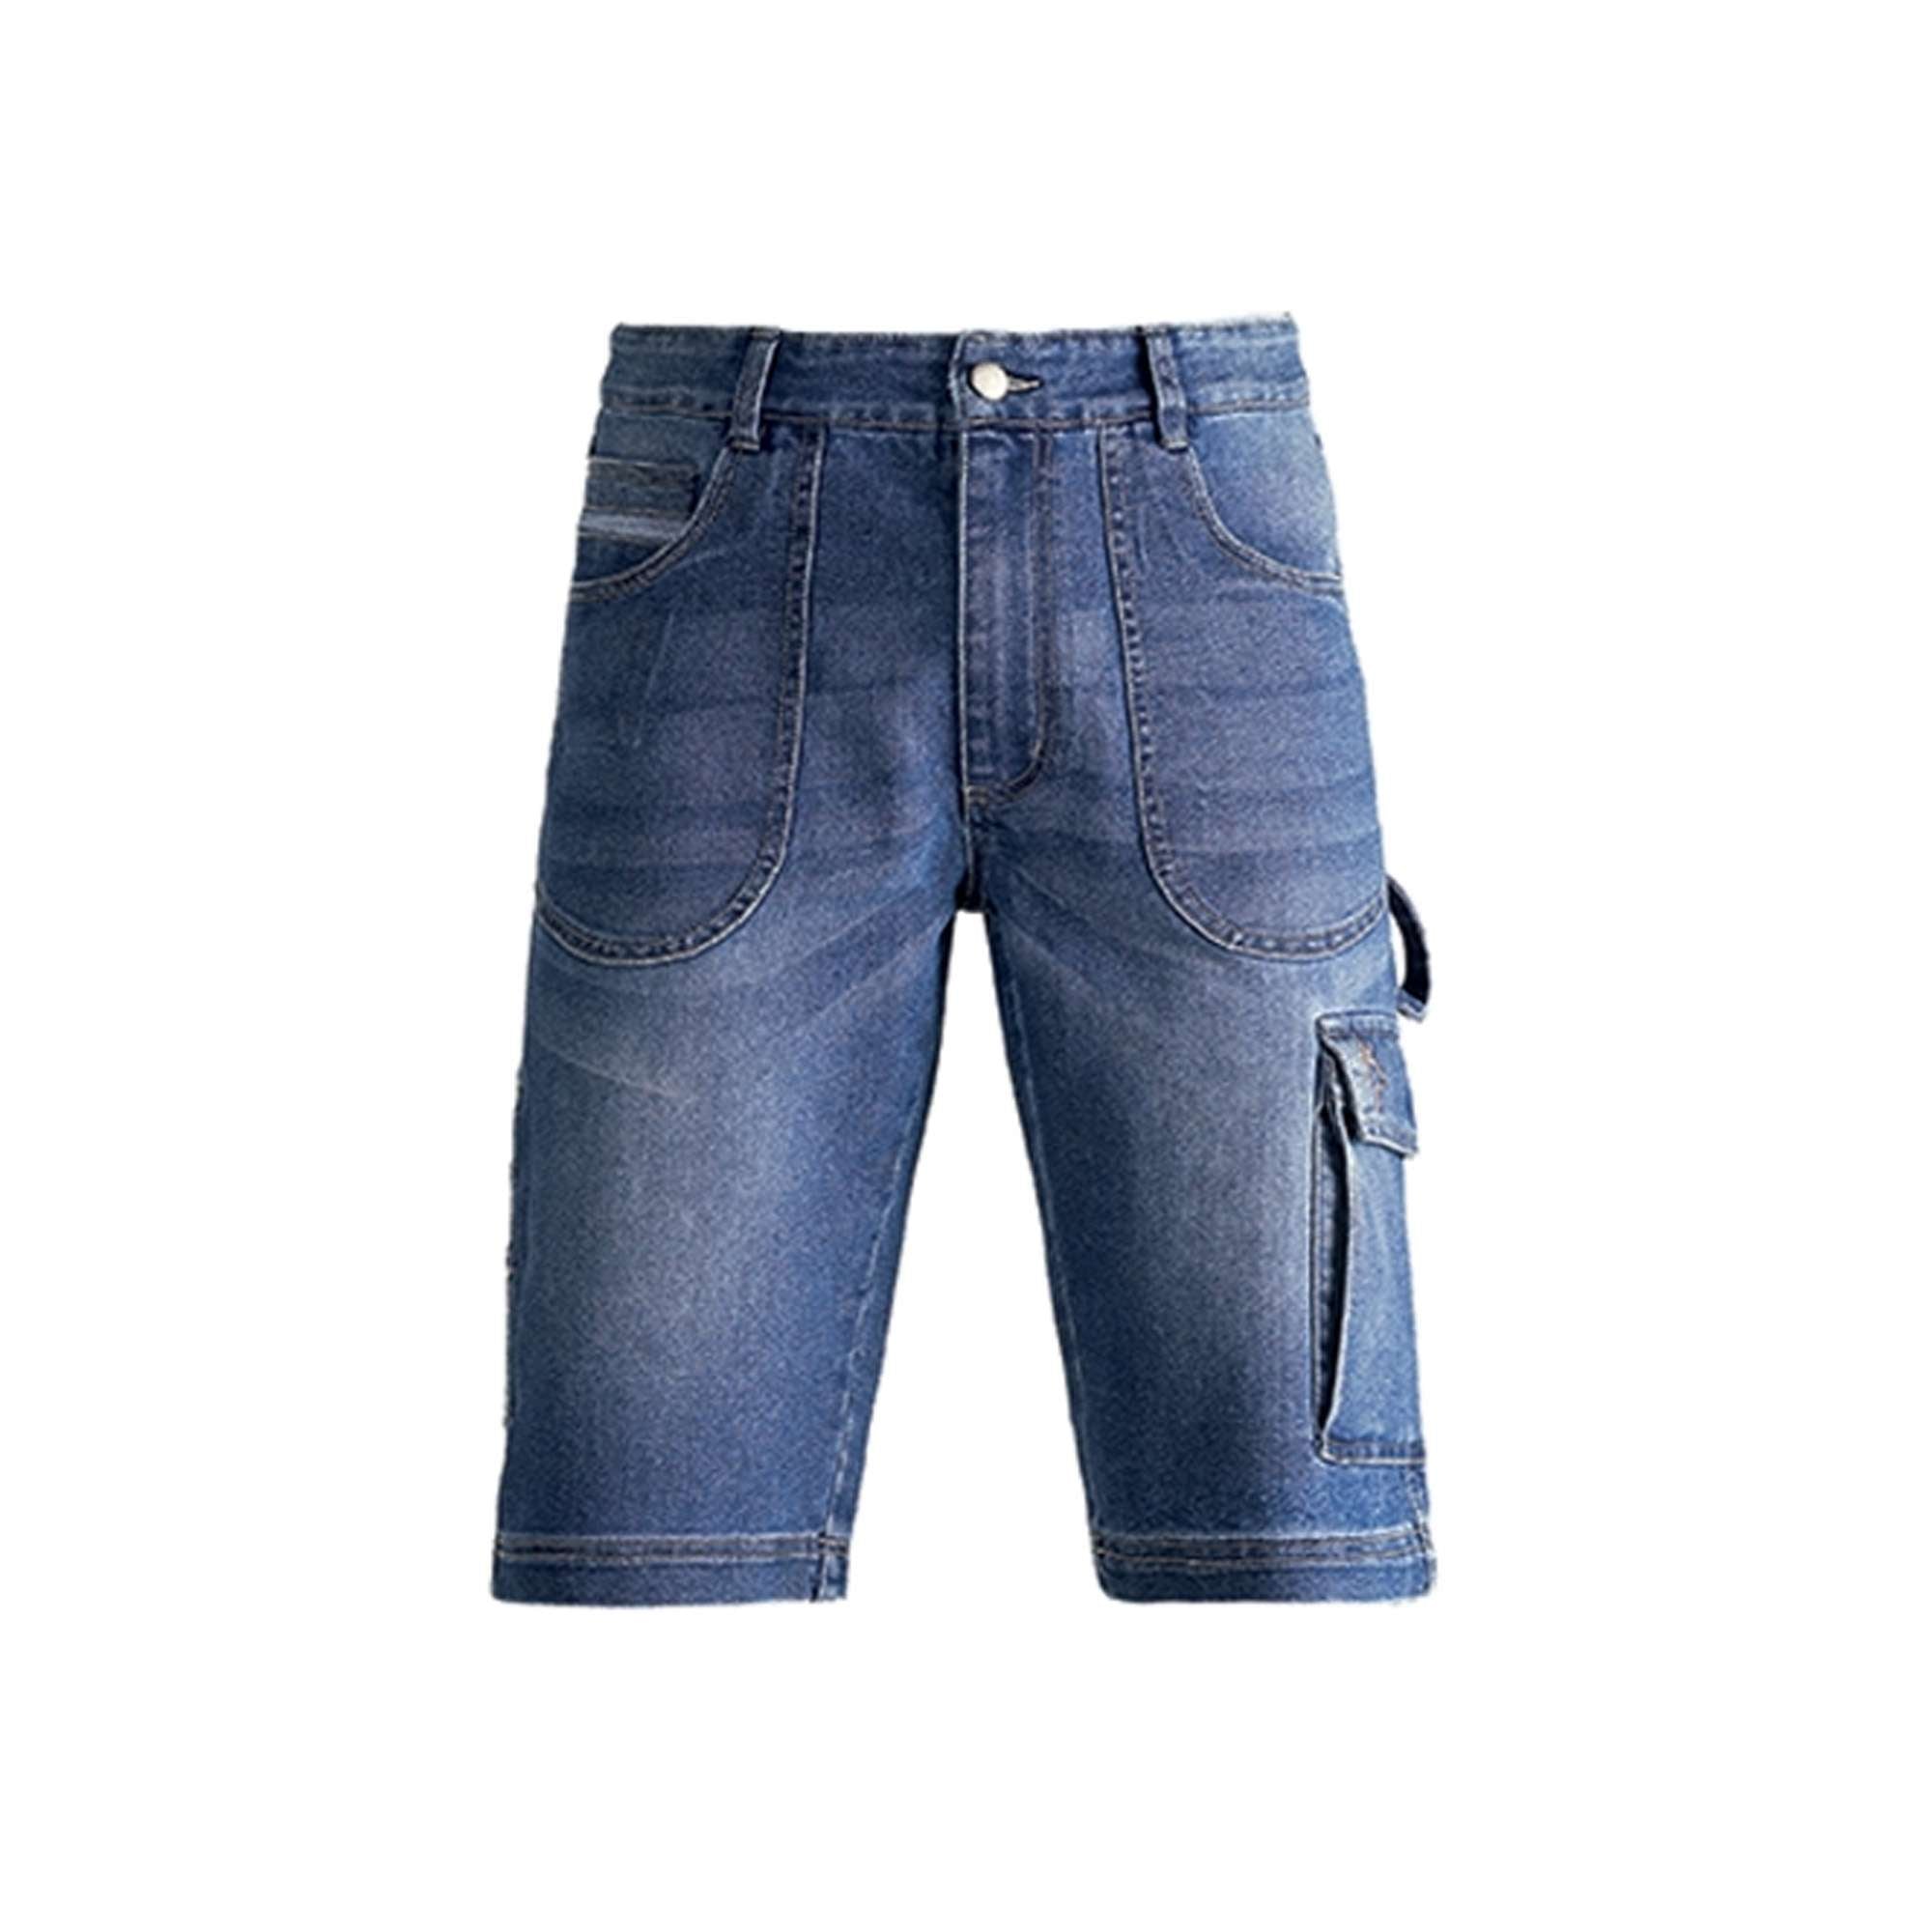 Pantalone corto jeans denim XL - 36087 Kapriol